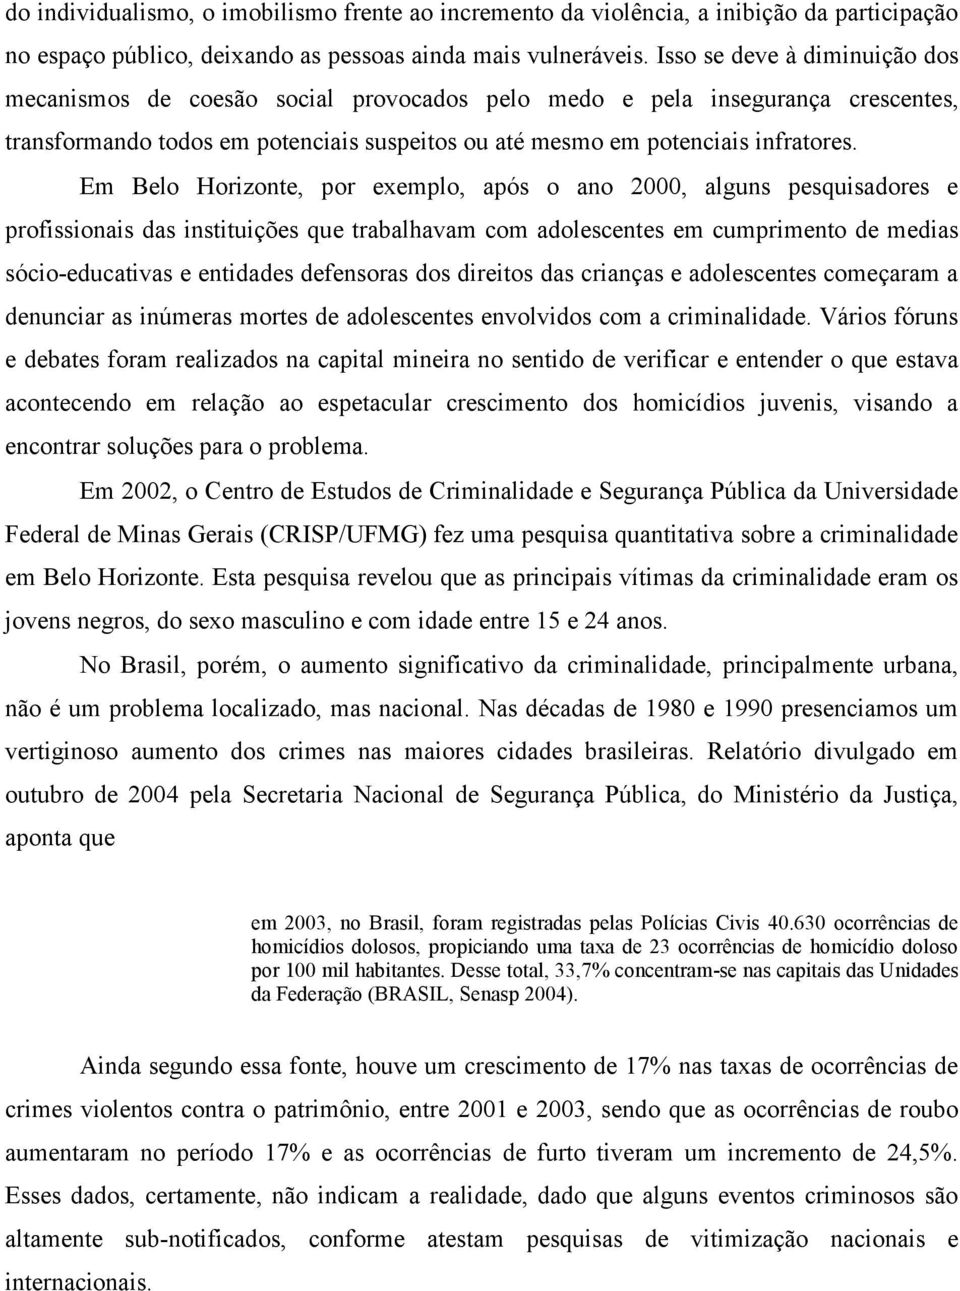 Em Belo Horizonte, por exemplo, após o ano 2000, alguns pesquisadores e profissionais das instituições que trabalhavam com adolescentes em cumprimento de medias sócio-educativas e entidades